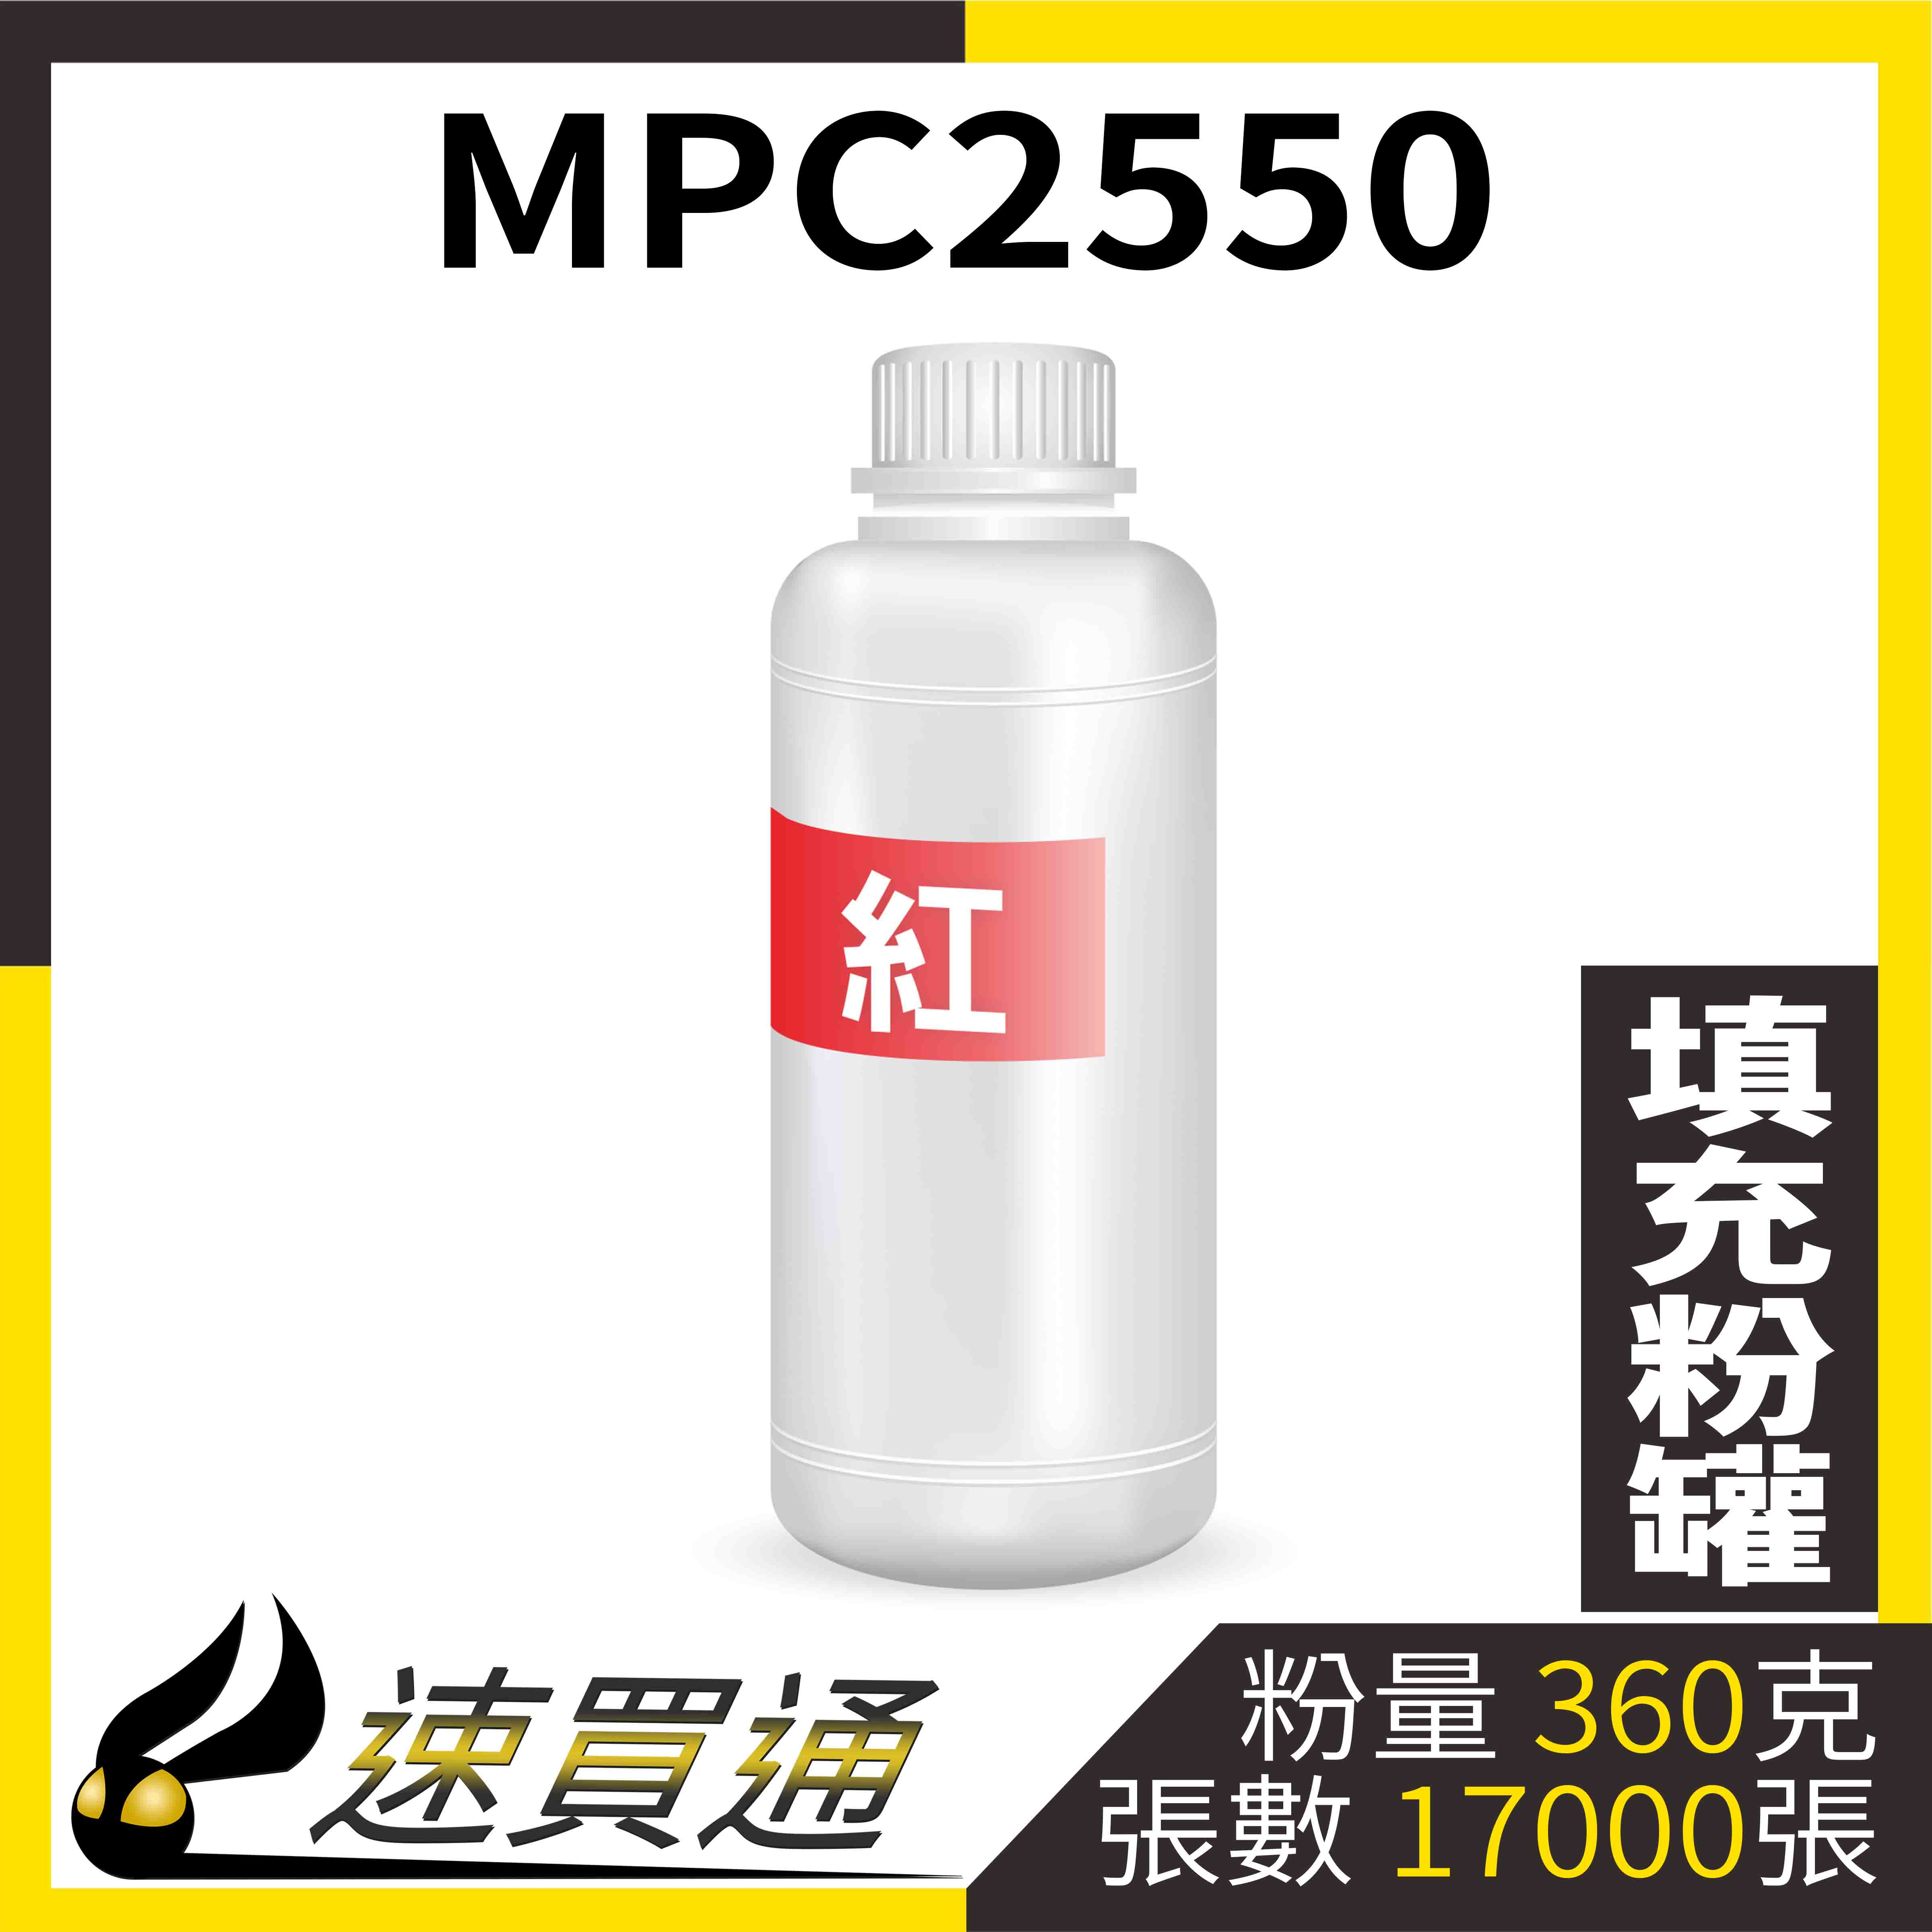 【速買通】RICOH MPC2550 紅 填充式碳粉罐